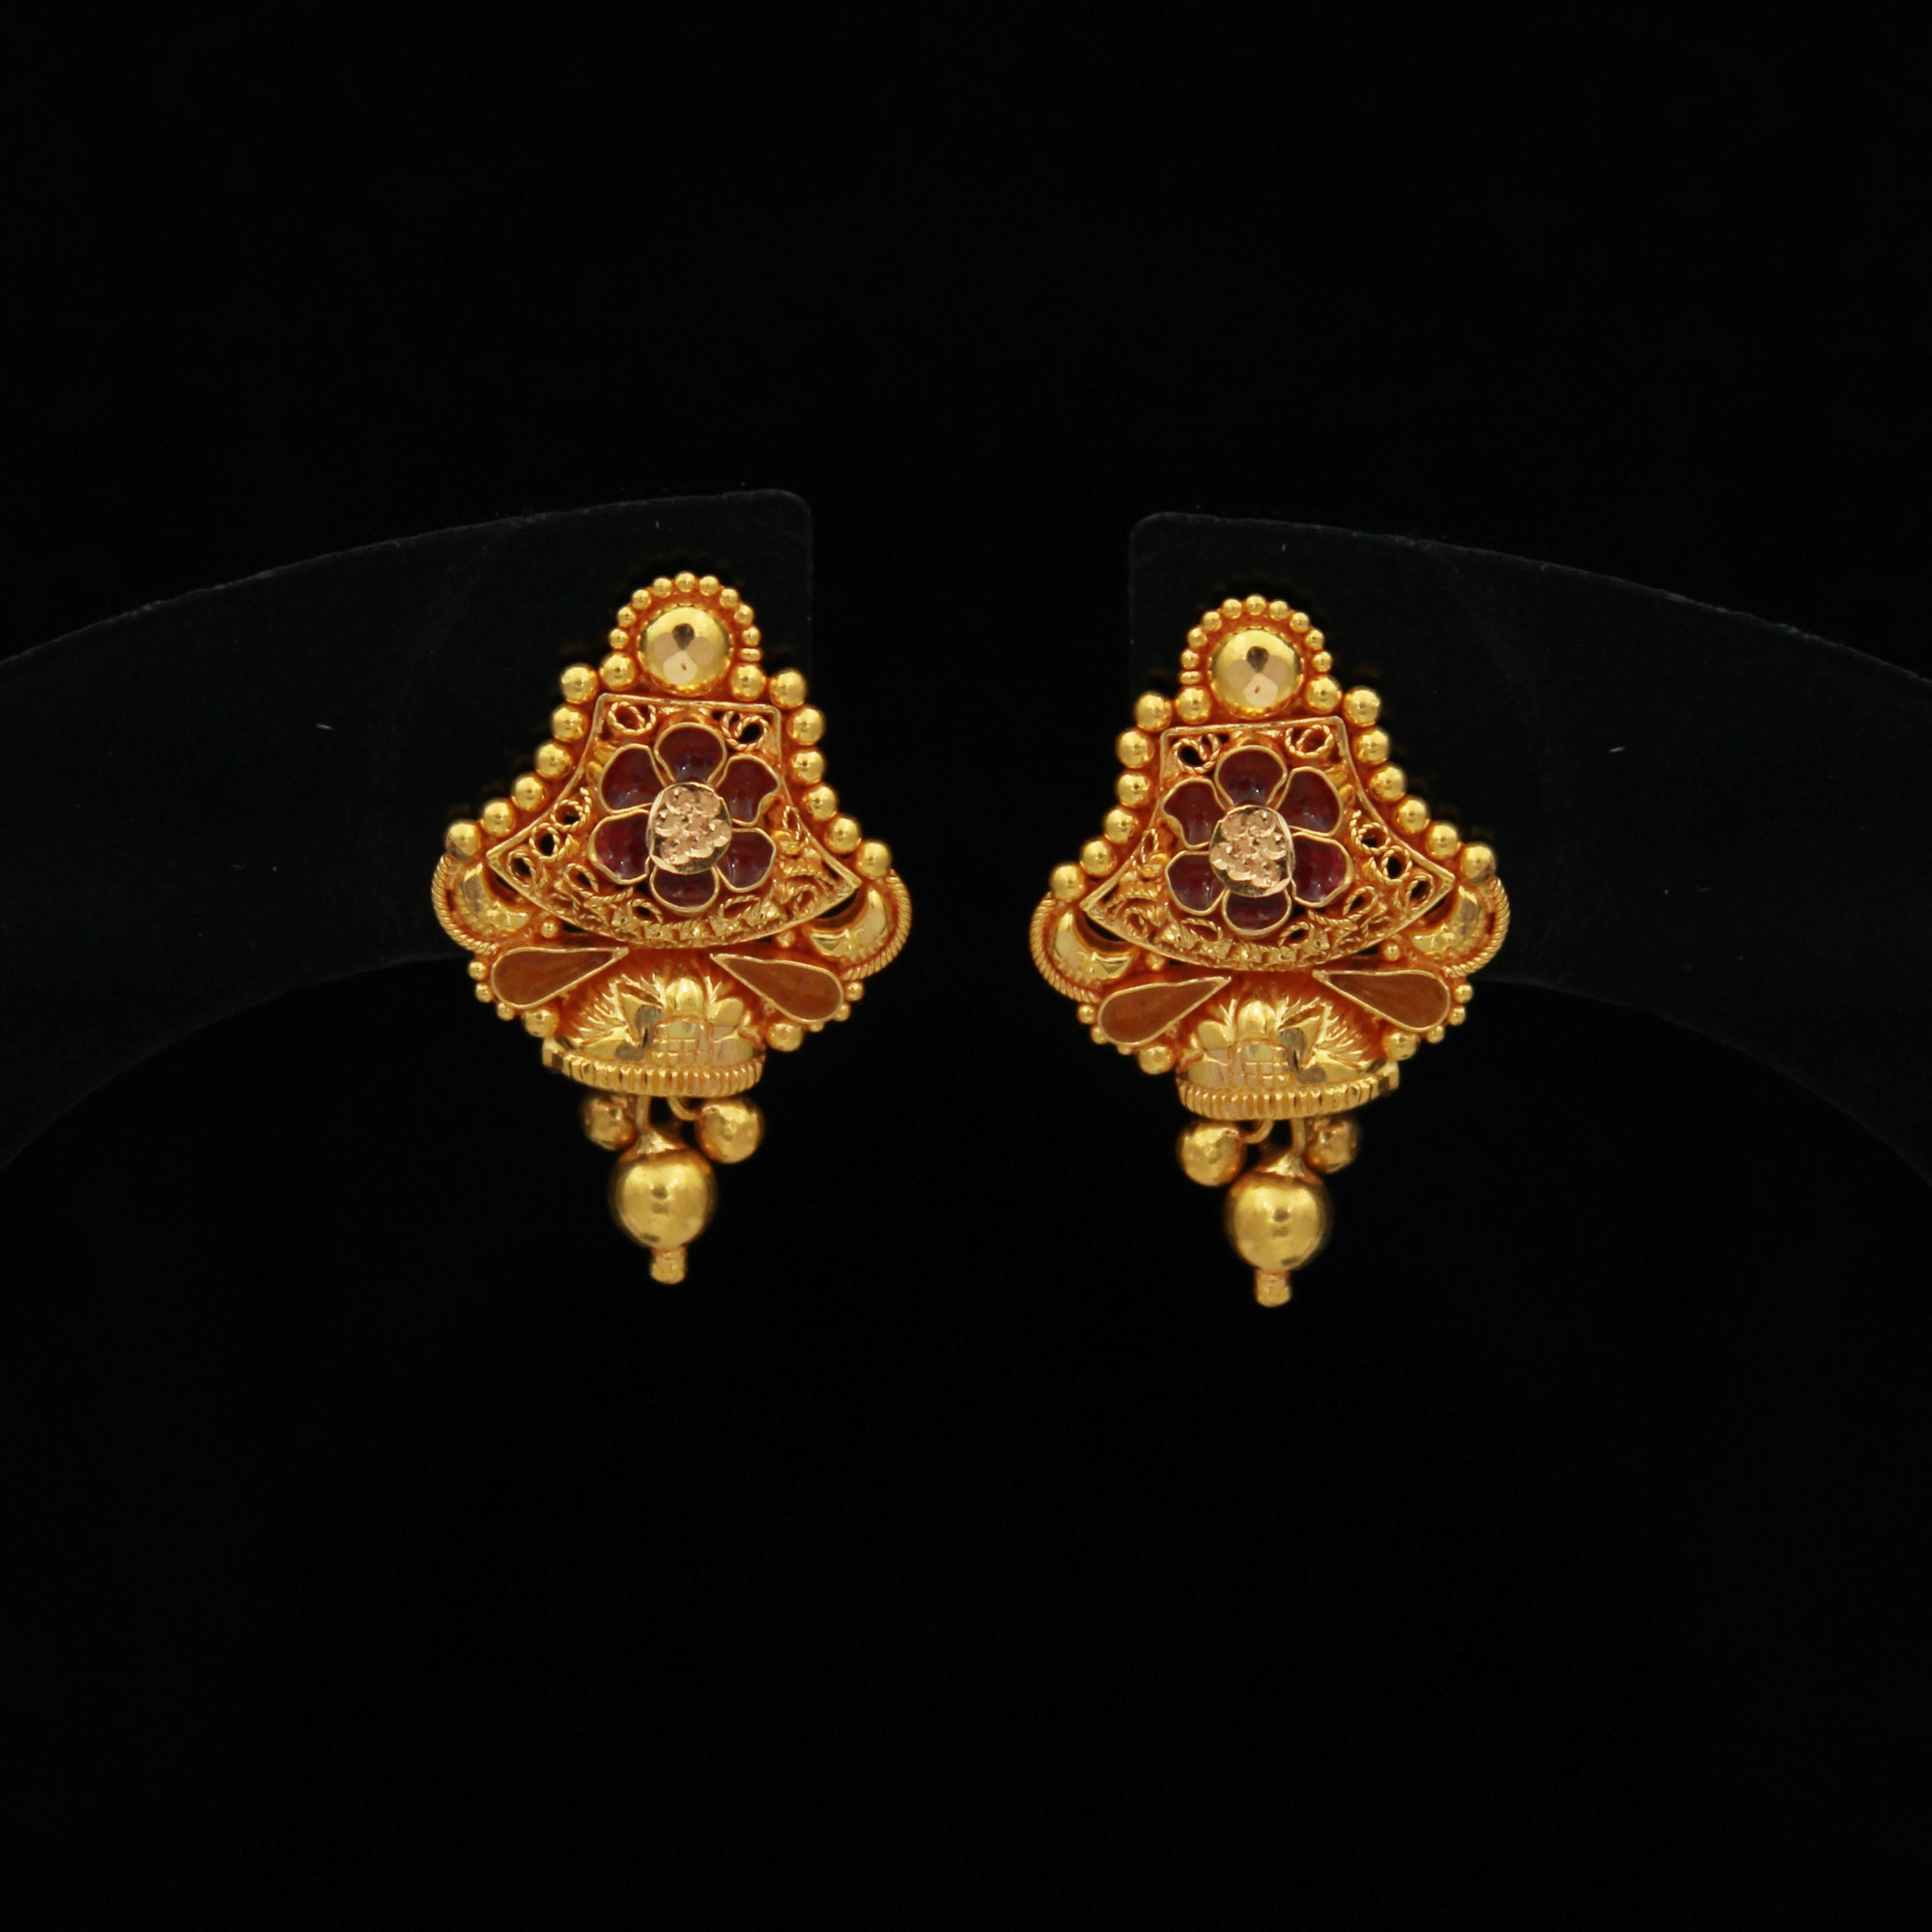 22k Gold Stud Earrings Handmade Yellow Gold Earrings for | Etsy